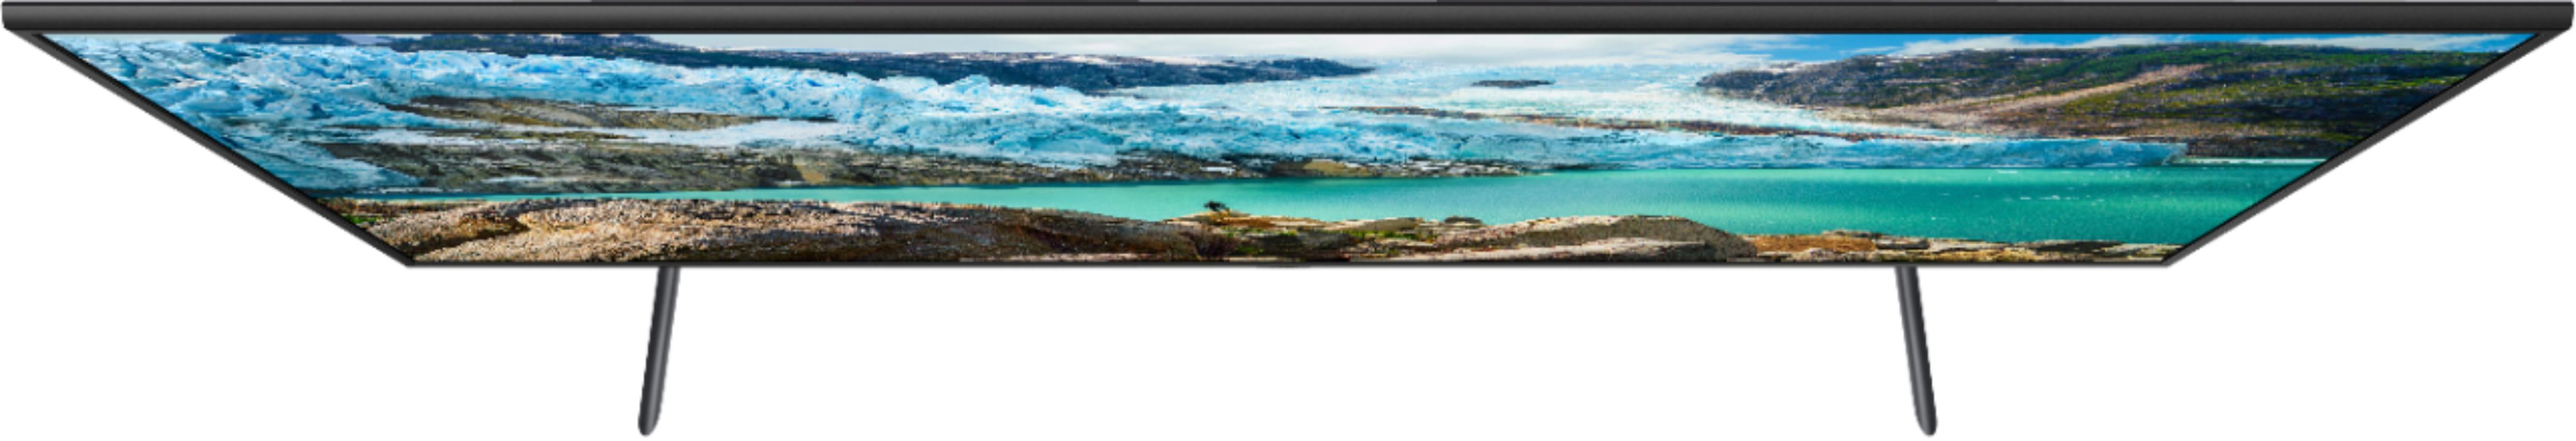 Samsung 58 RU7100 4K Ultra HD Smart TV 2019 UN58RU7100FXZC Canada Version - Charcoal Black